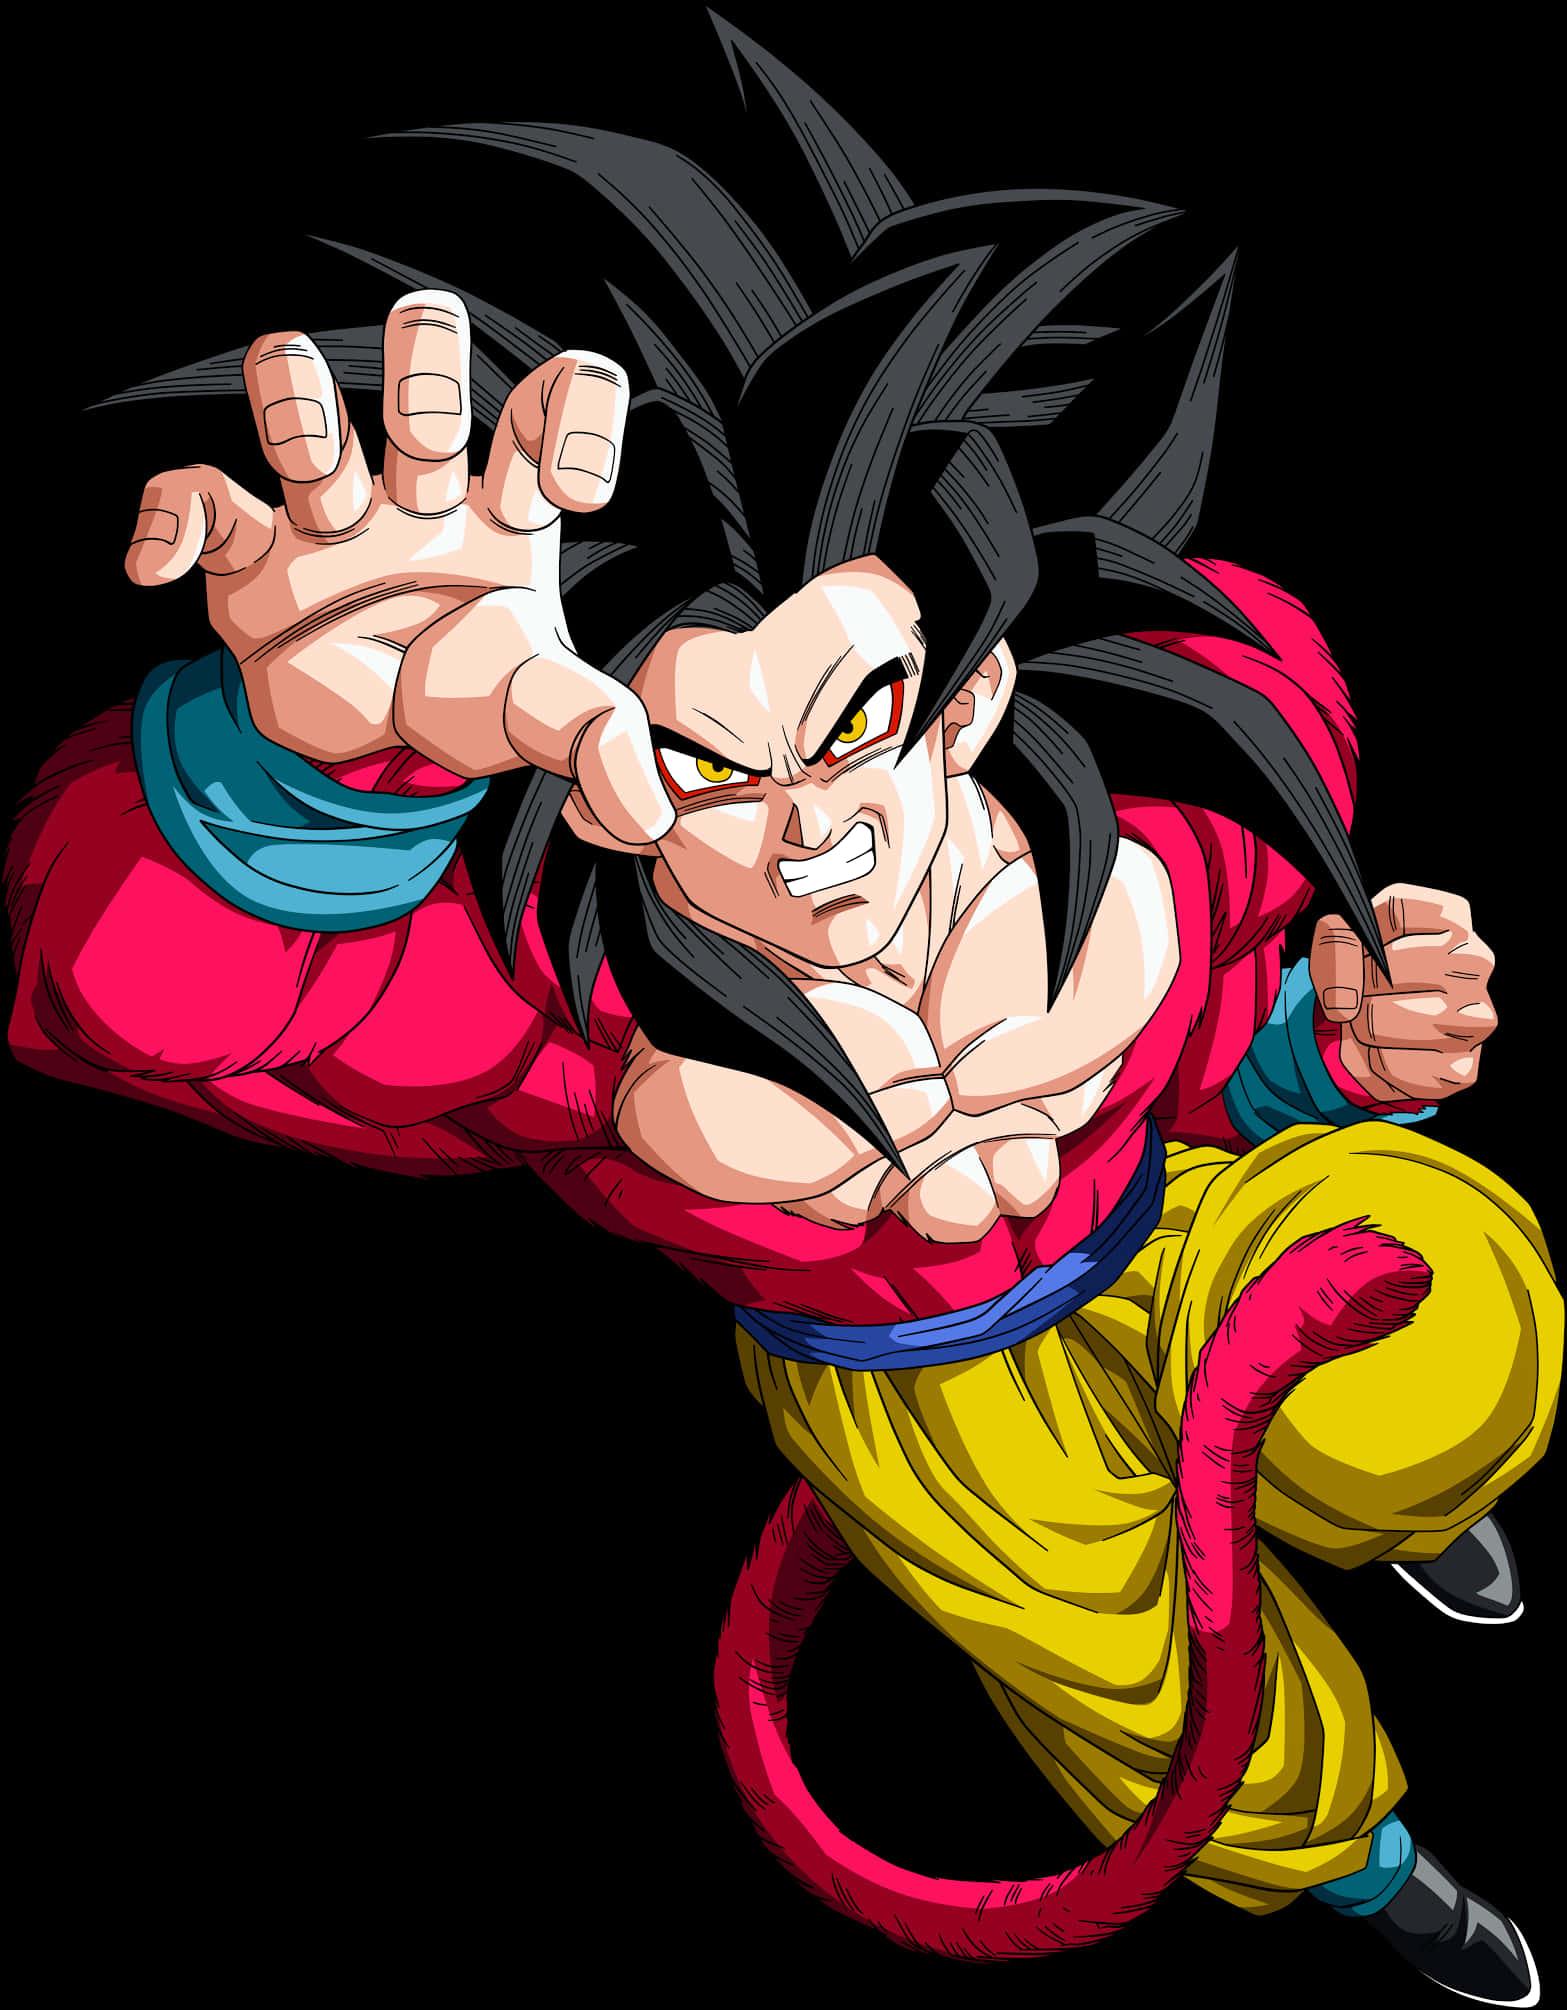 Super Saiyan4 Goku Action Pose PNG image